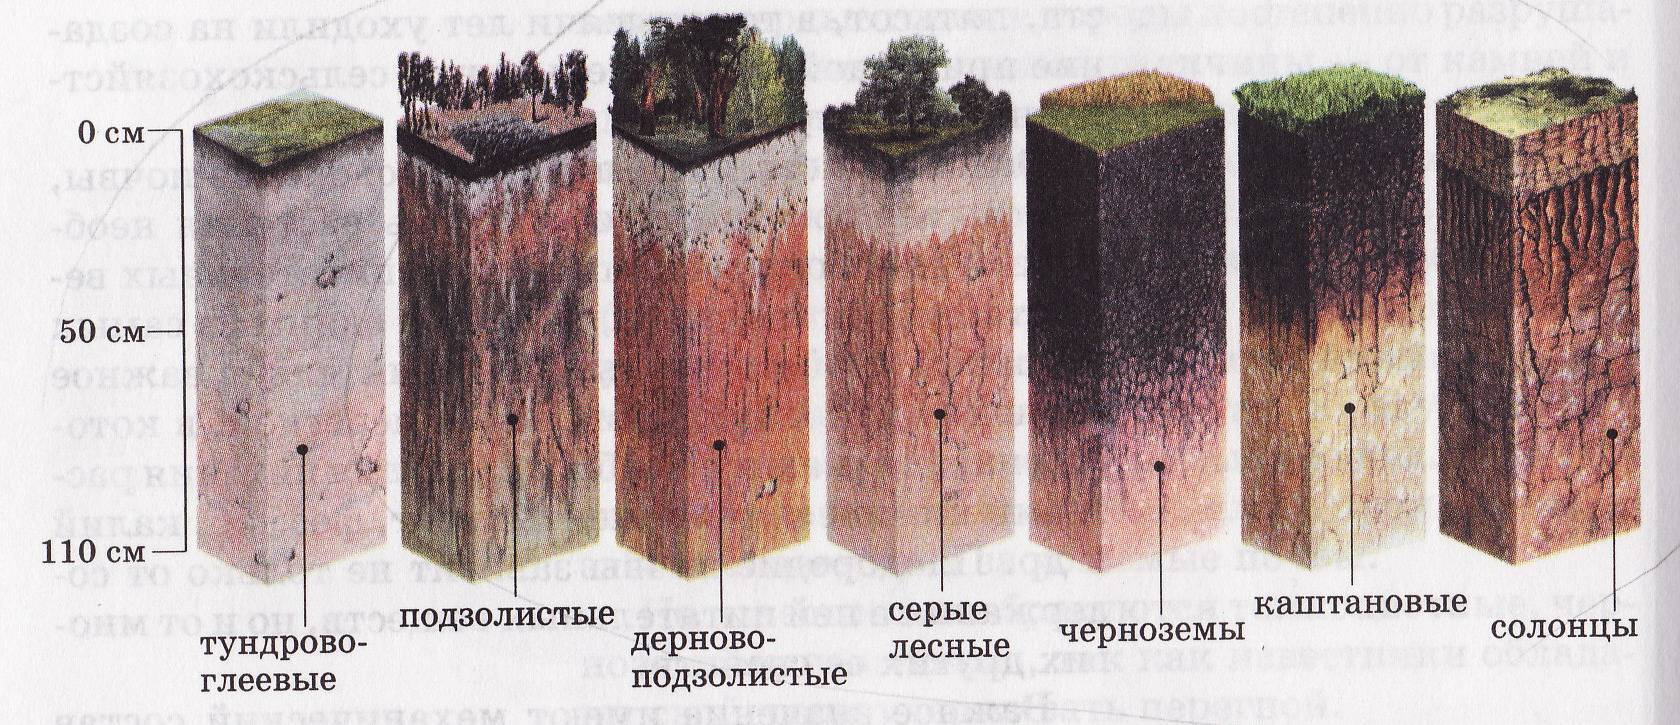 Какая почва менее плодородна. Дерново-подзолистая, серая Лесная, чернозем почвенные горизонты. Подзолистая почва профиль почвы. Пахотные дерново-подзолистые почвы профиль. Почвенный профиль подзолистых почв.